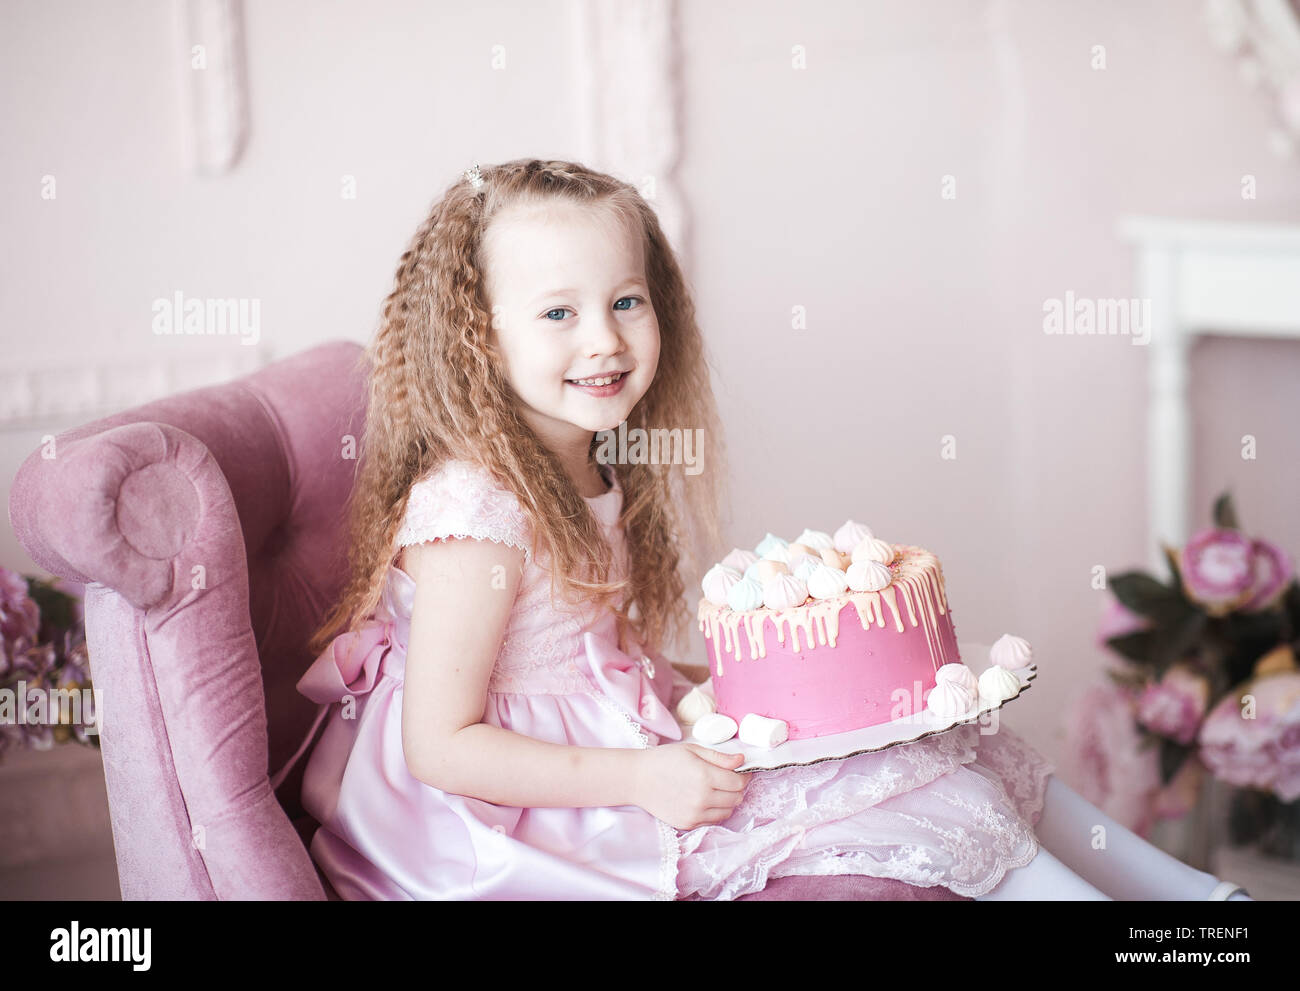 Chica Con Pastel Cumpleaños Año Edad Sesión Fotos Del Bebé: fotografía de  stock © yarovoy_aleksandr #250486656